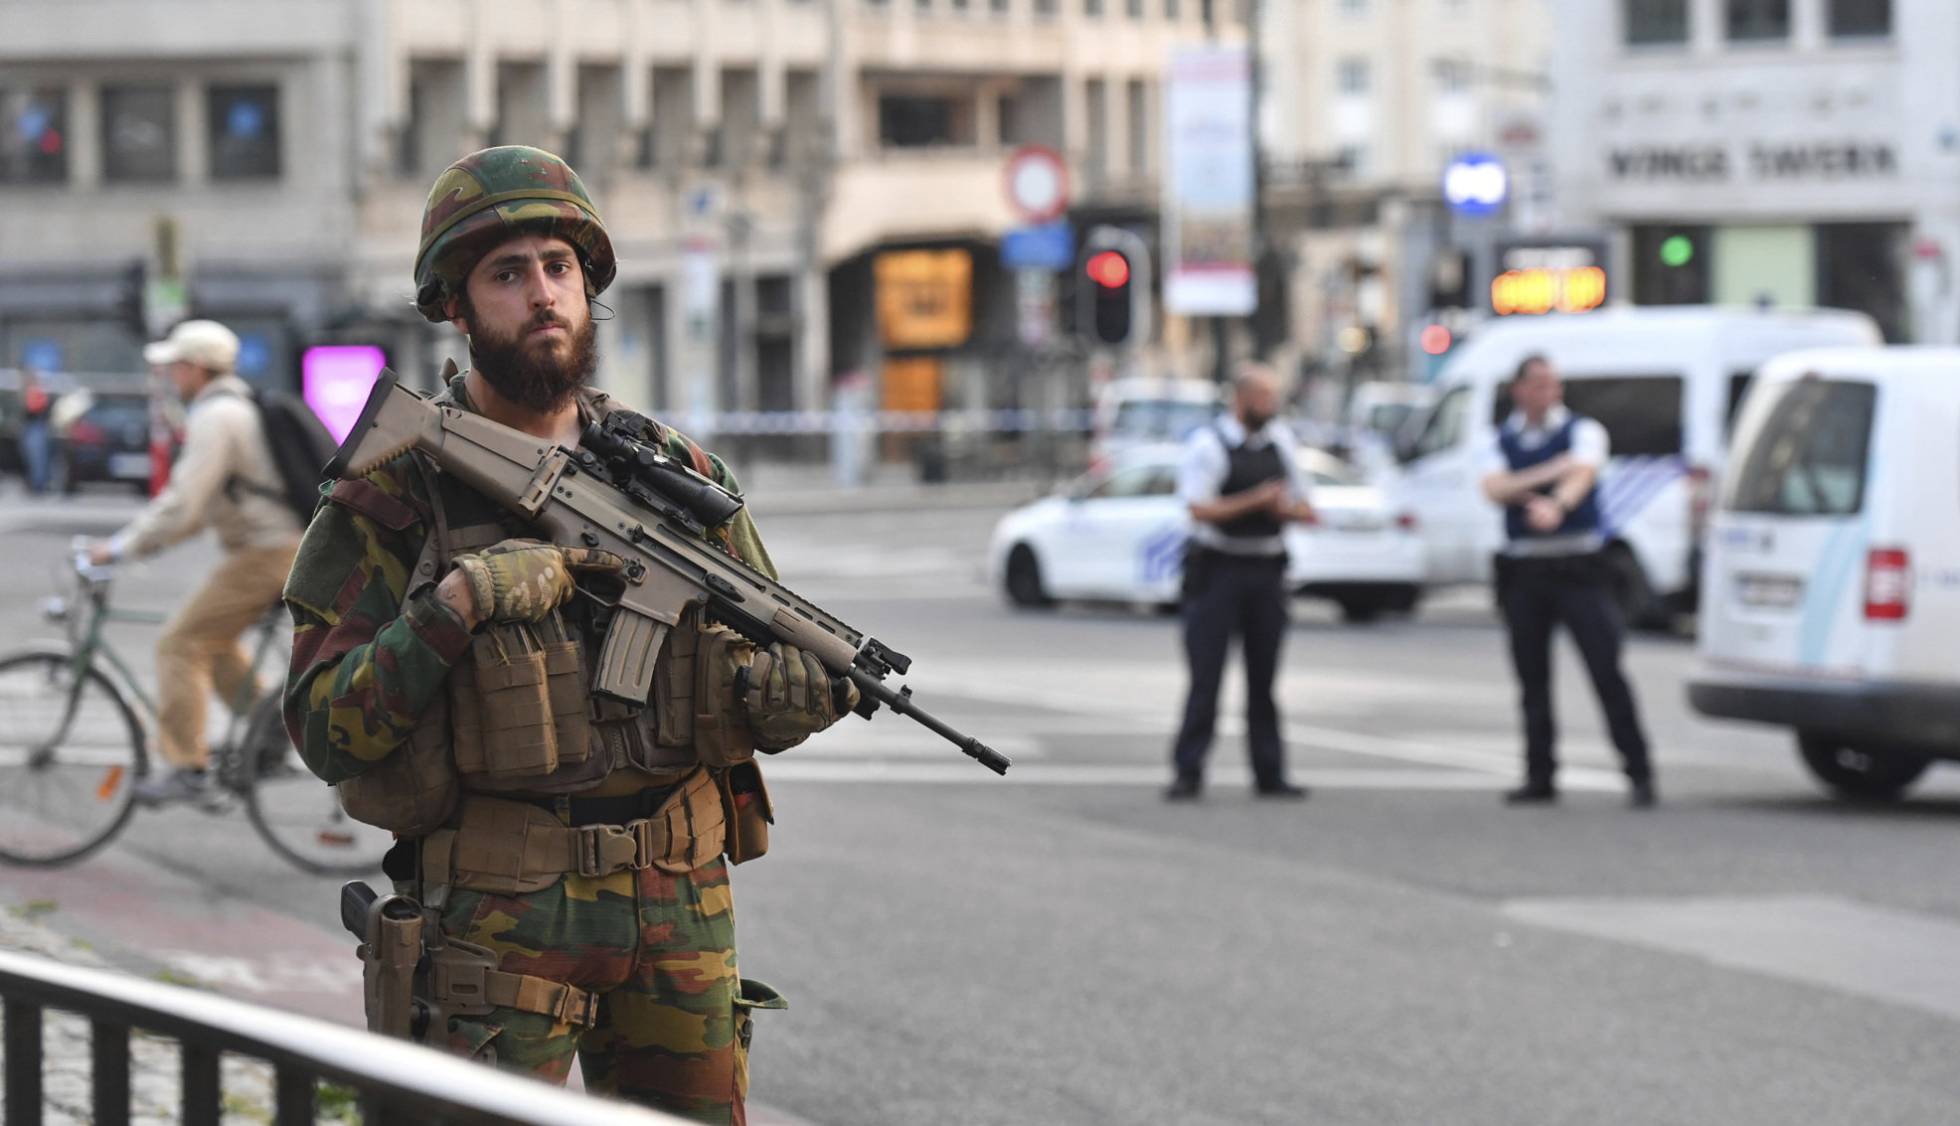 Atentados en Bruselas dejan 34 muertos y más de 200 heridos. 1497986800_548117_1497988357_noticia_normal_recorte1